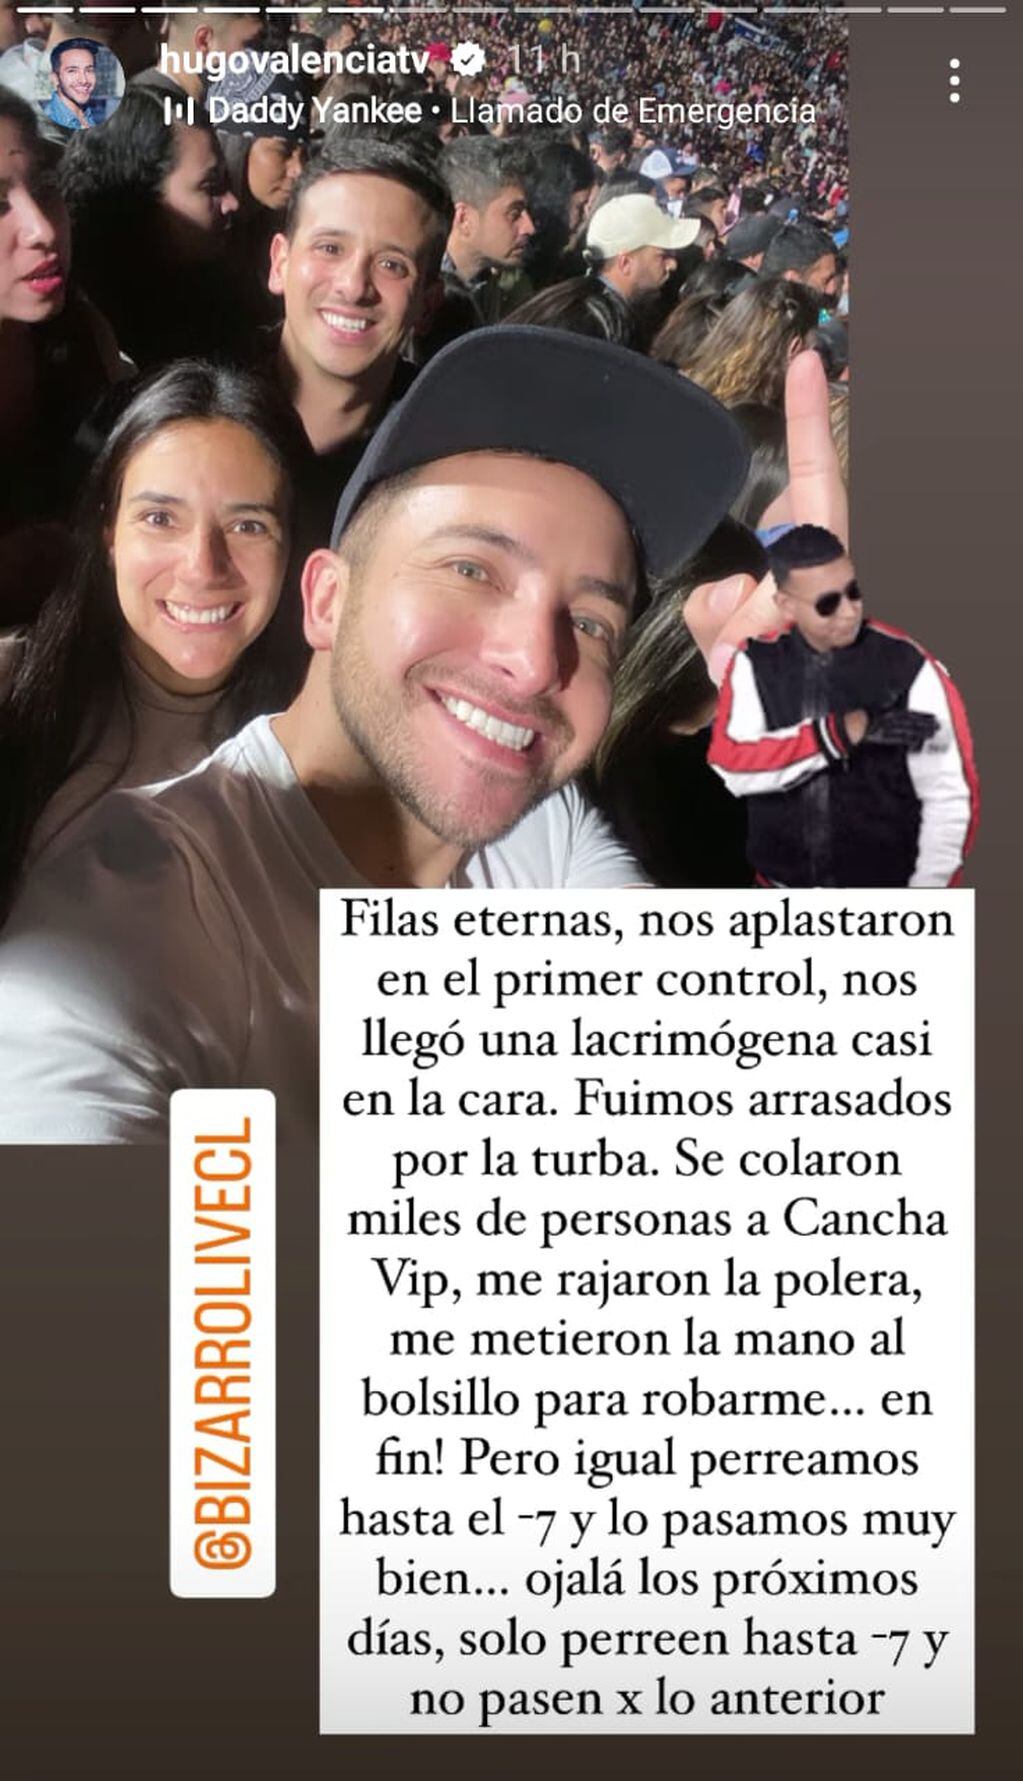 Hugo Valencia y su experiencia en el concierto de Daddy Yankee